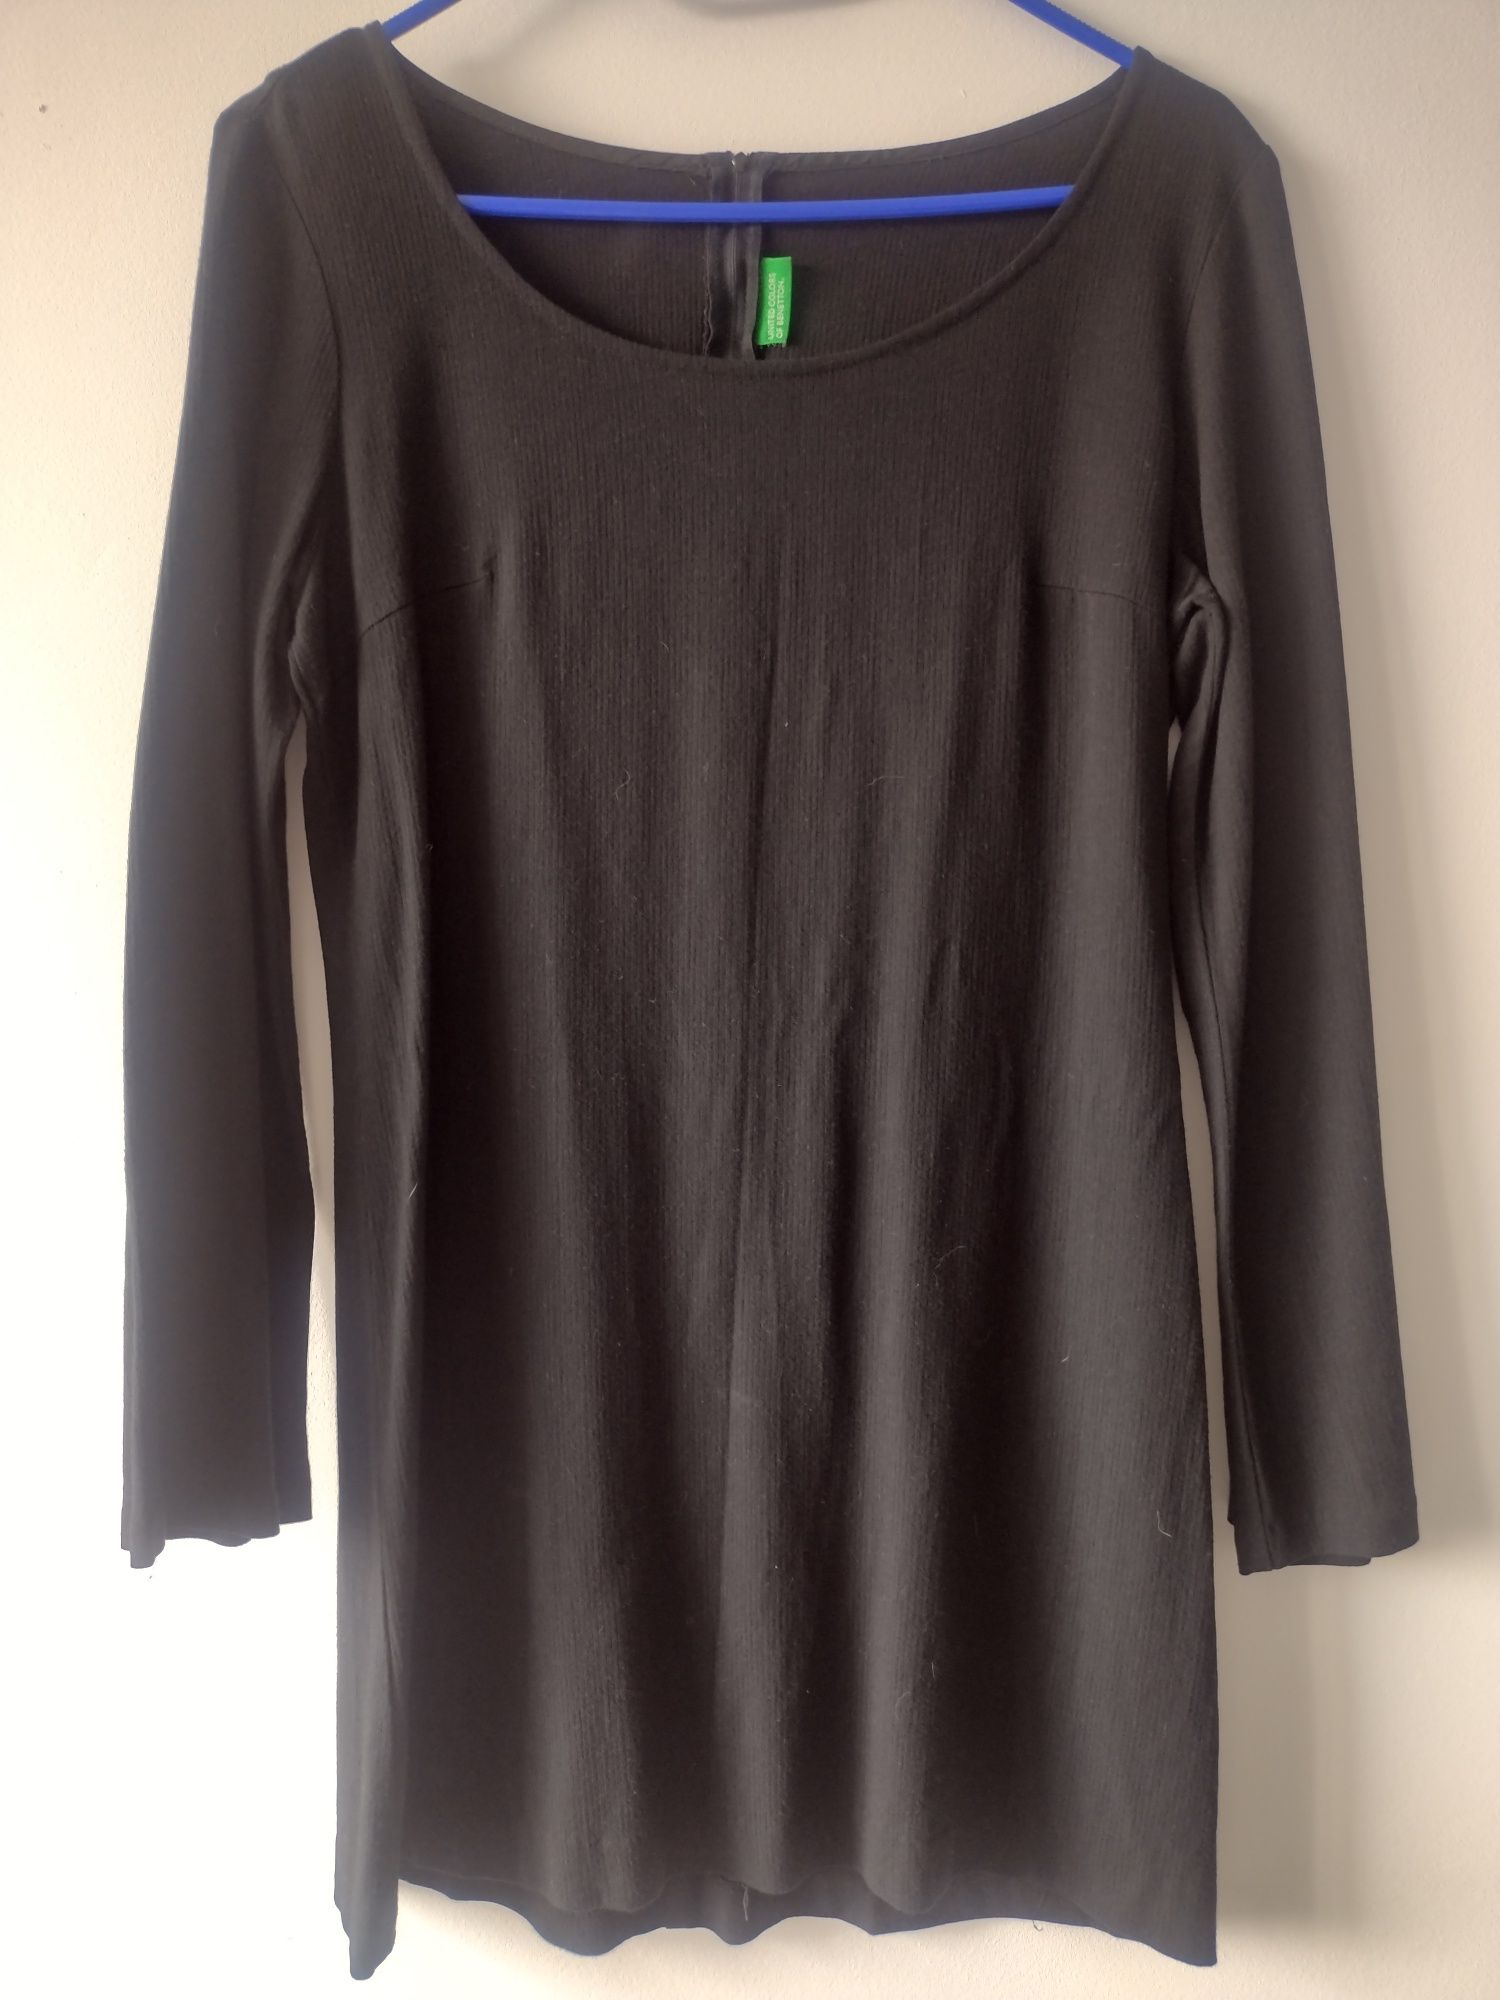 Czarna sukienka mini/czarna tunika firmy Benetton rozm. M